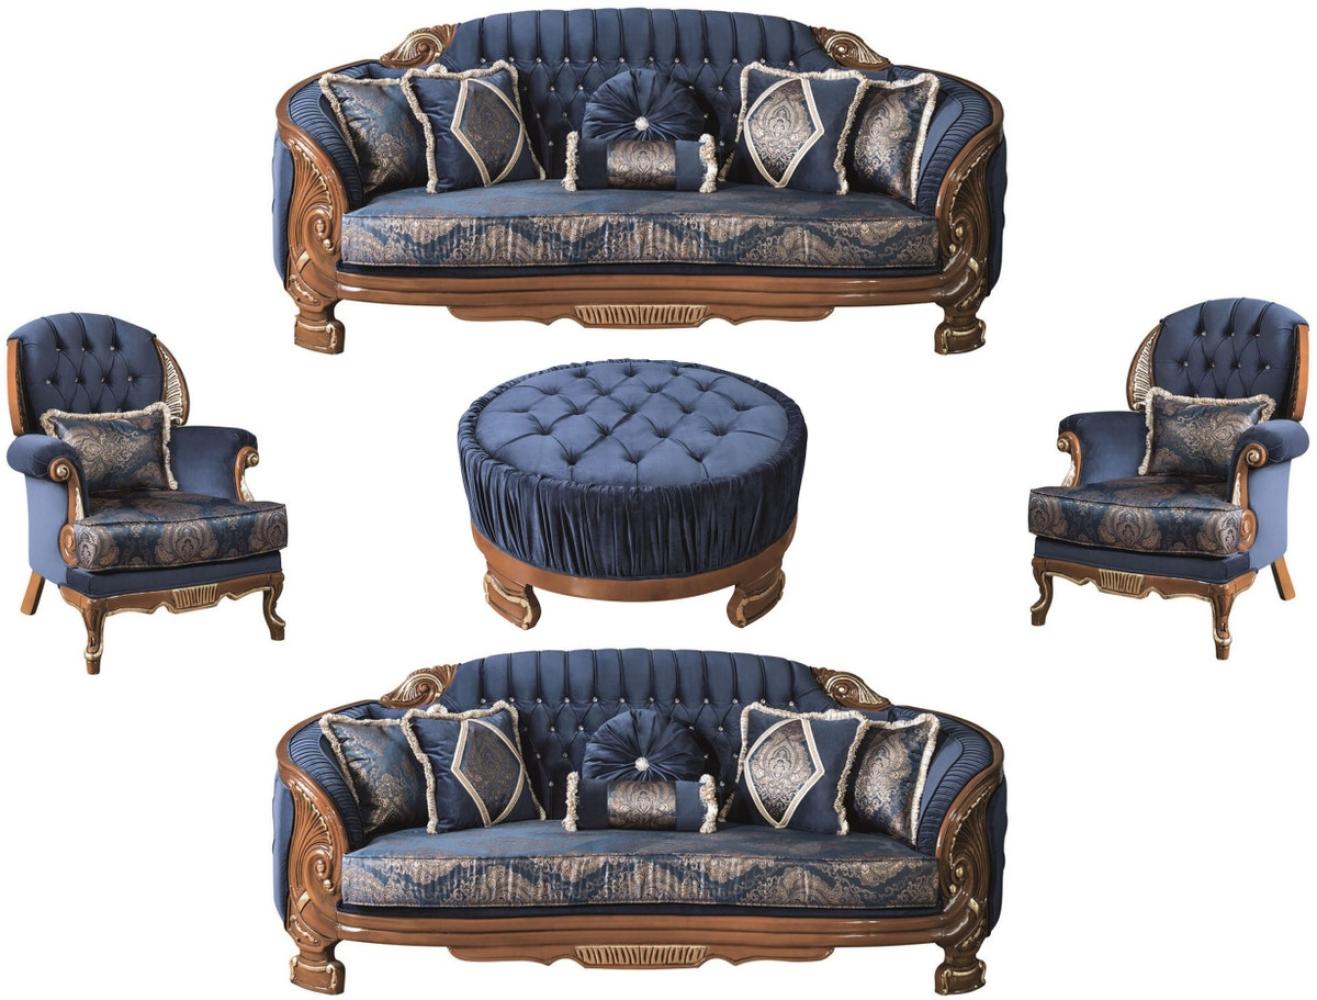 Casa Padrino Luxus Barock Wohnzimmer Set Blau / Braun - 2 Sofas & 2 Sessel & 1 Couchtisch - Prunkvolle Wohnzimmer Möbel im Barockstil Bild 1